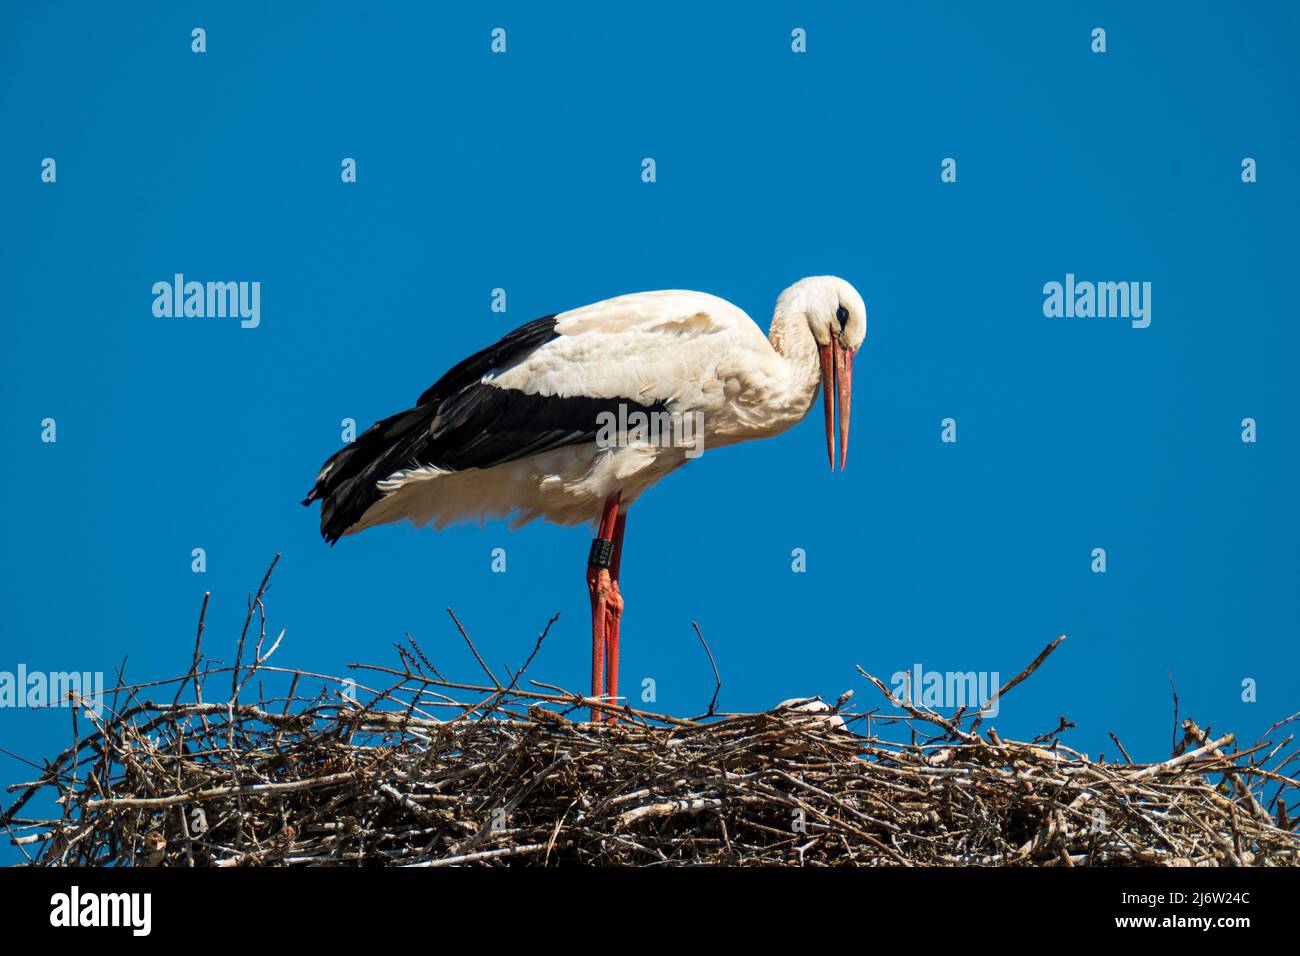 La cigüeña blanca está en el nido con su pico abierto, cielo azul sin nubes Foto de stock